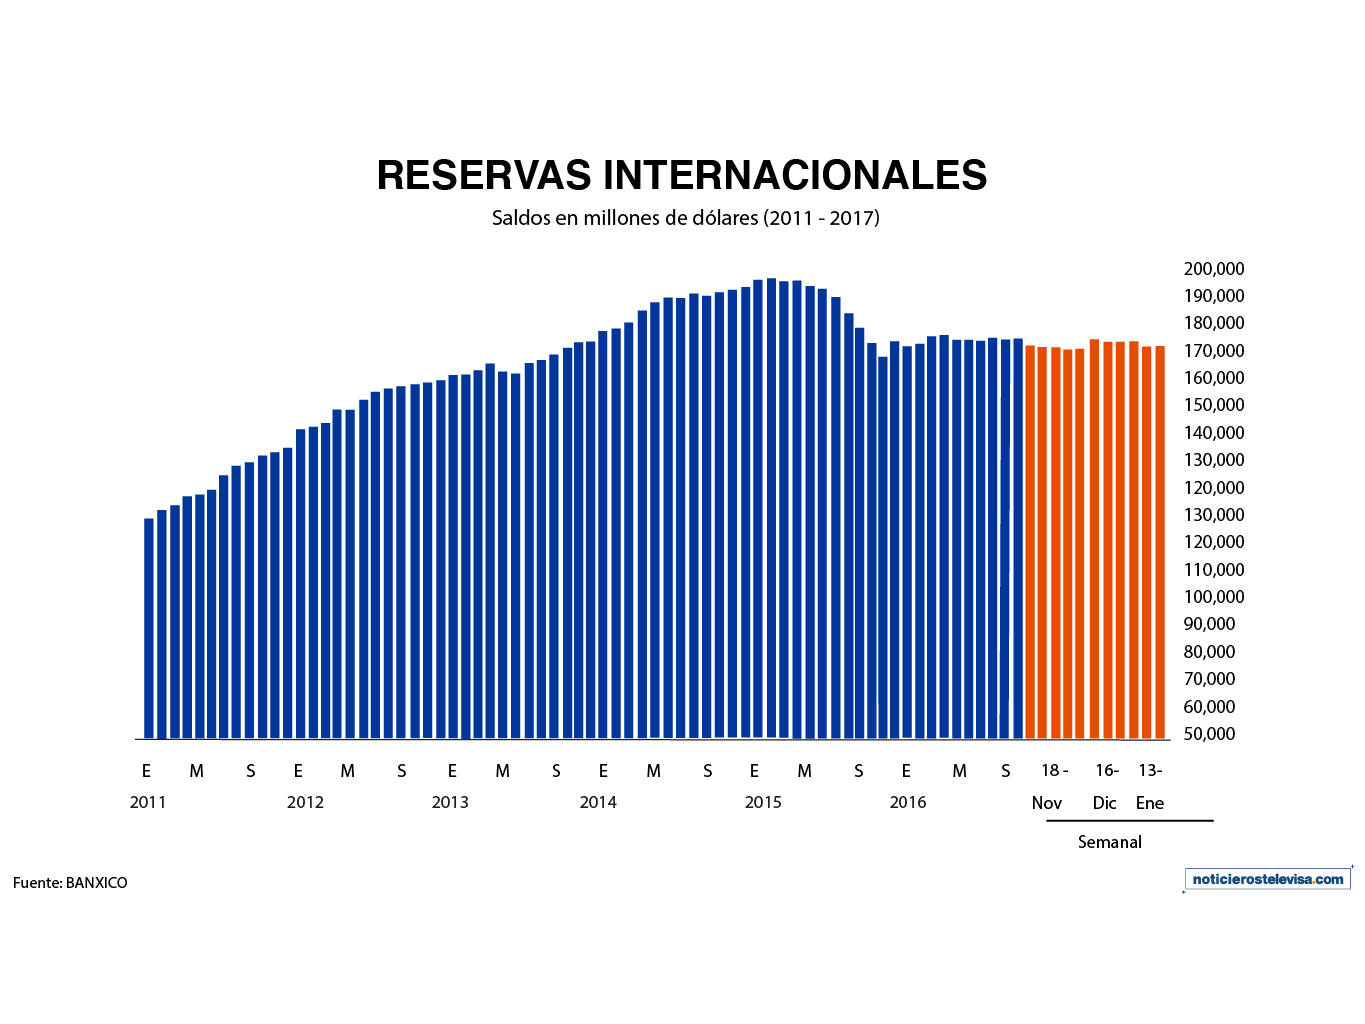 Durante la semana que terminó el 13 de enero, el monto de las reservas internacionales aumentó a 174,902 mdd (Noticieros Televisa)